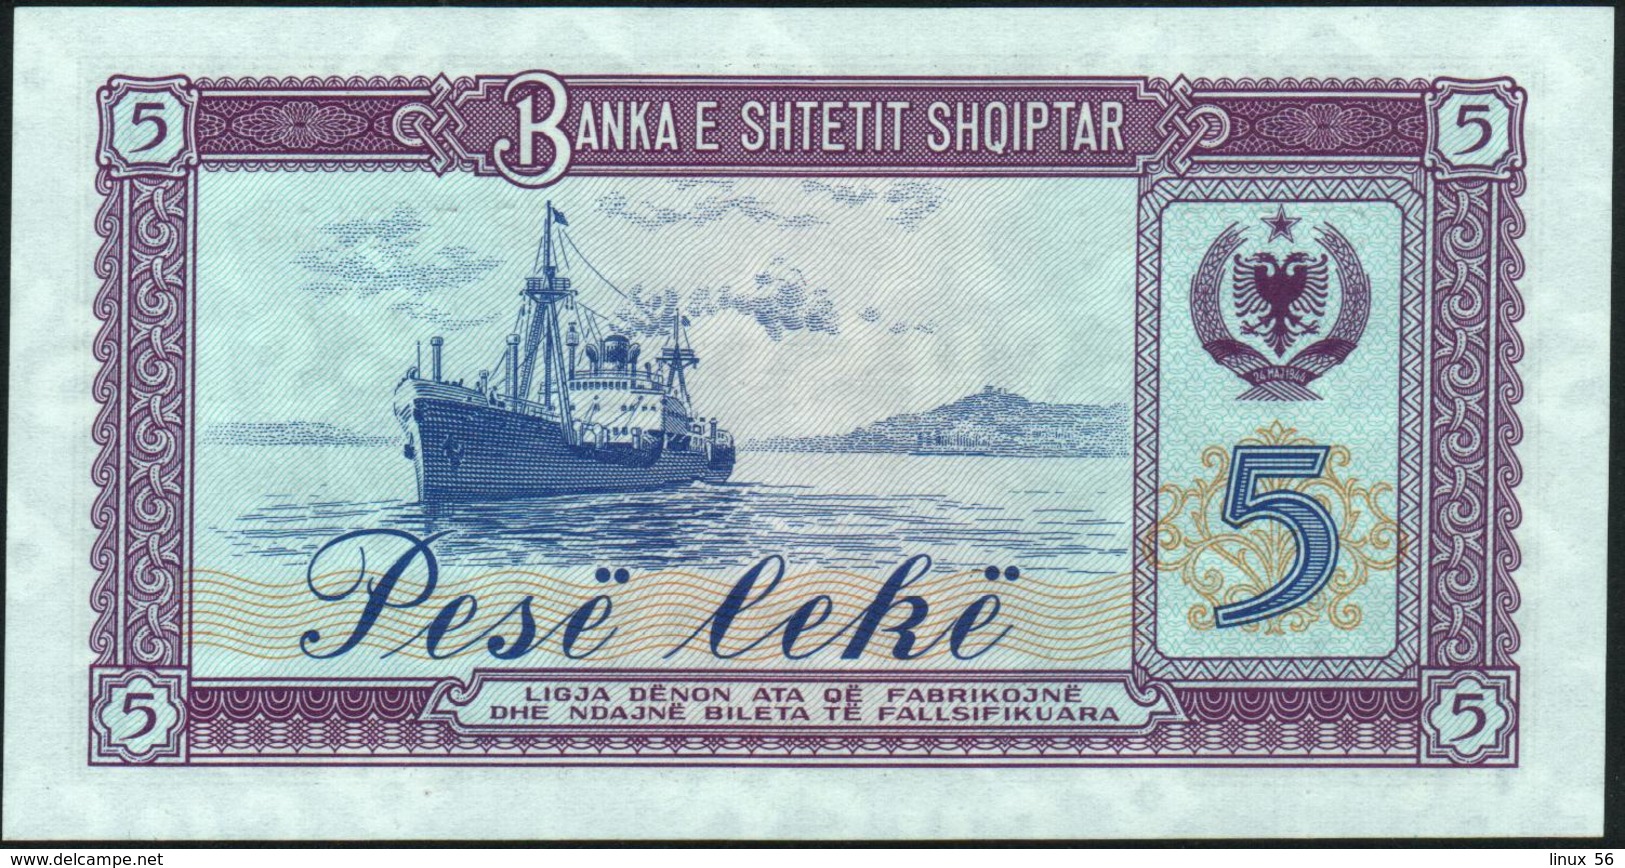 ALBANIA - 5 Lek 1976 {Banka E Shtetit Shqiptar} UNC P.42 - Albania